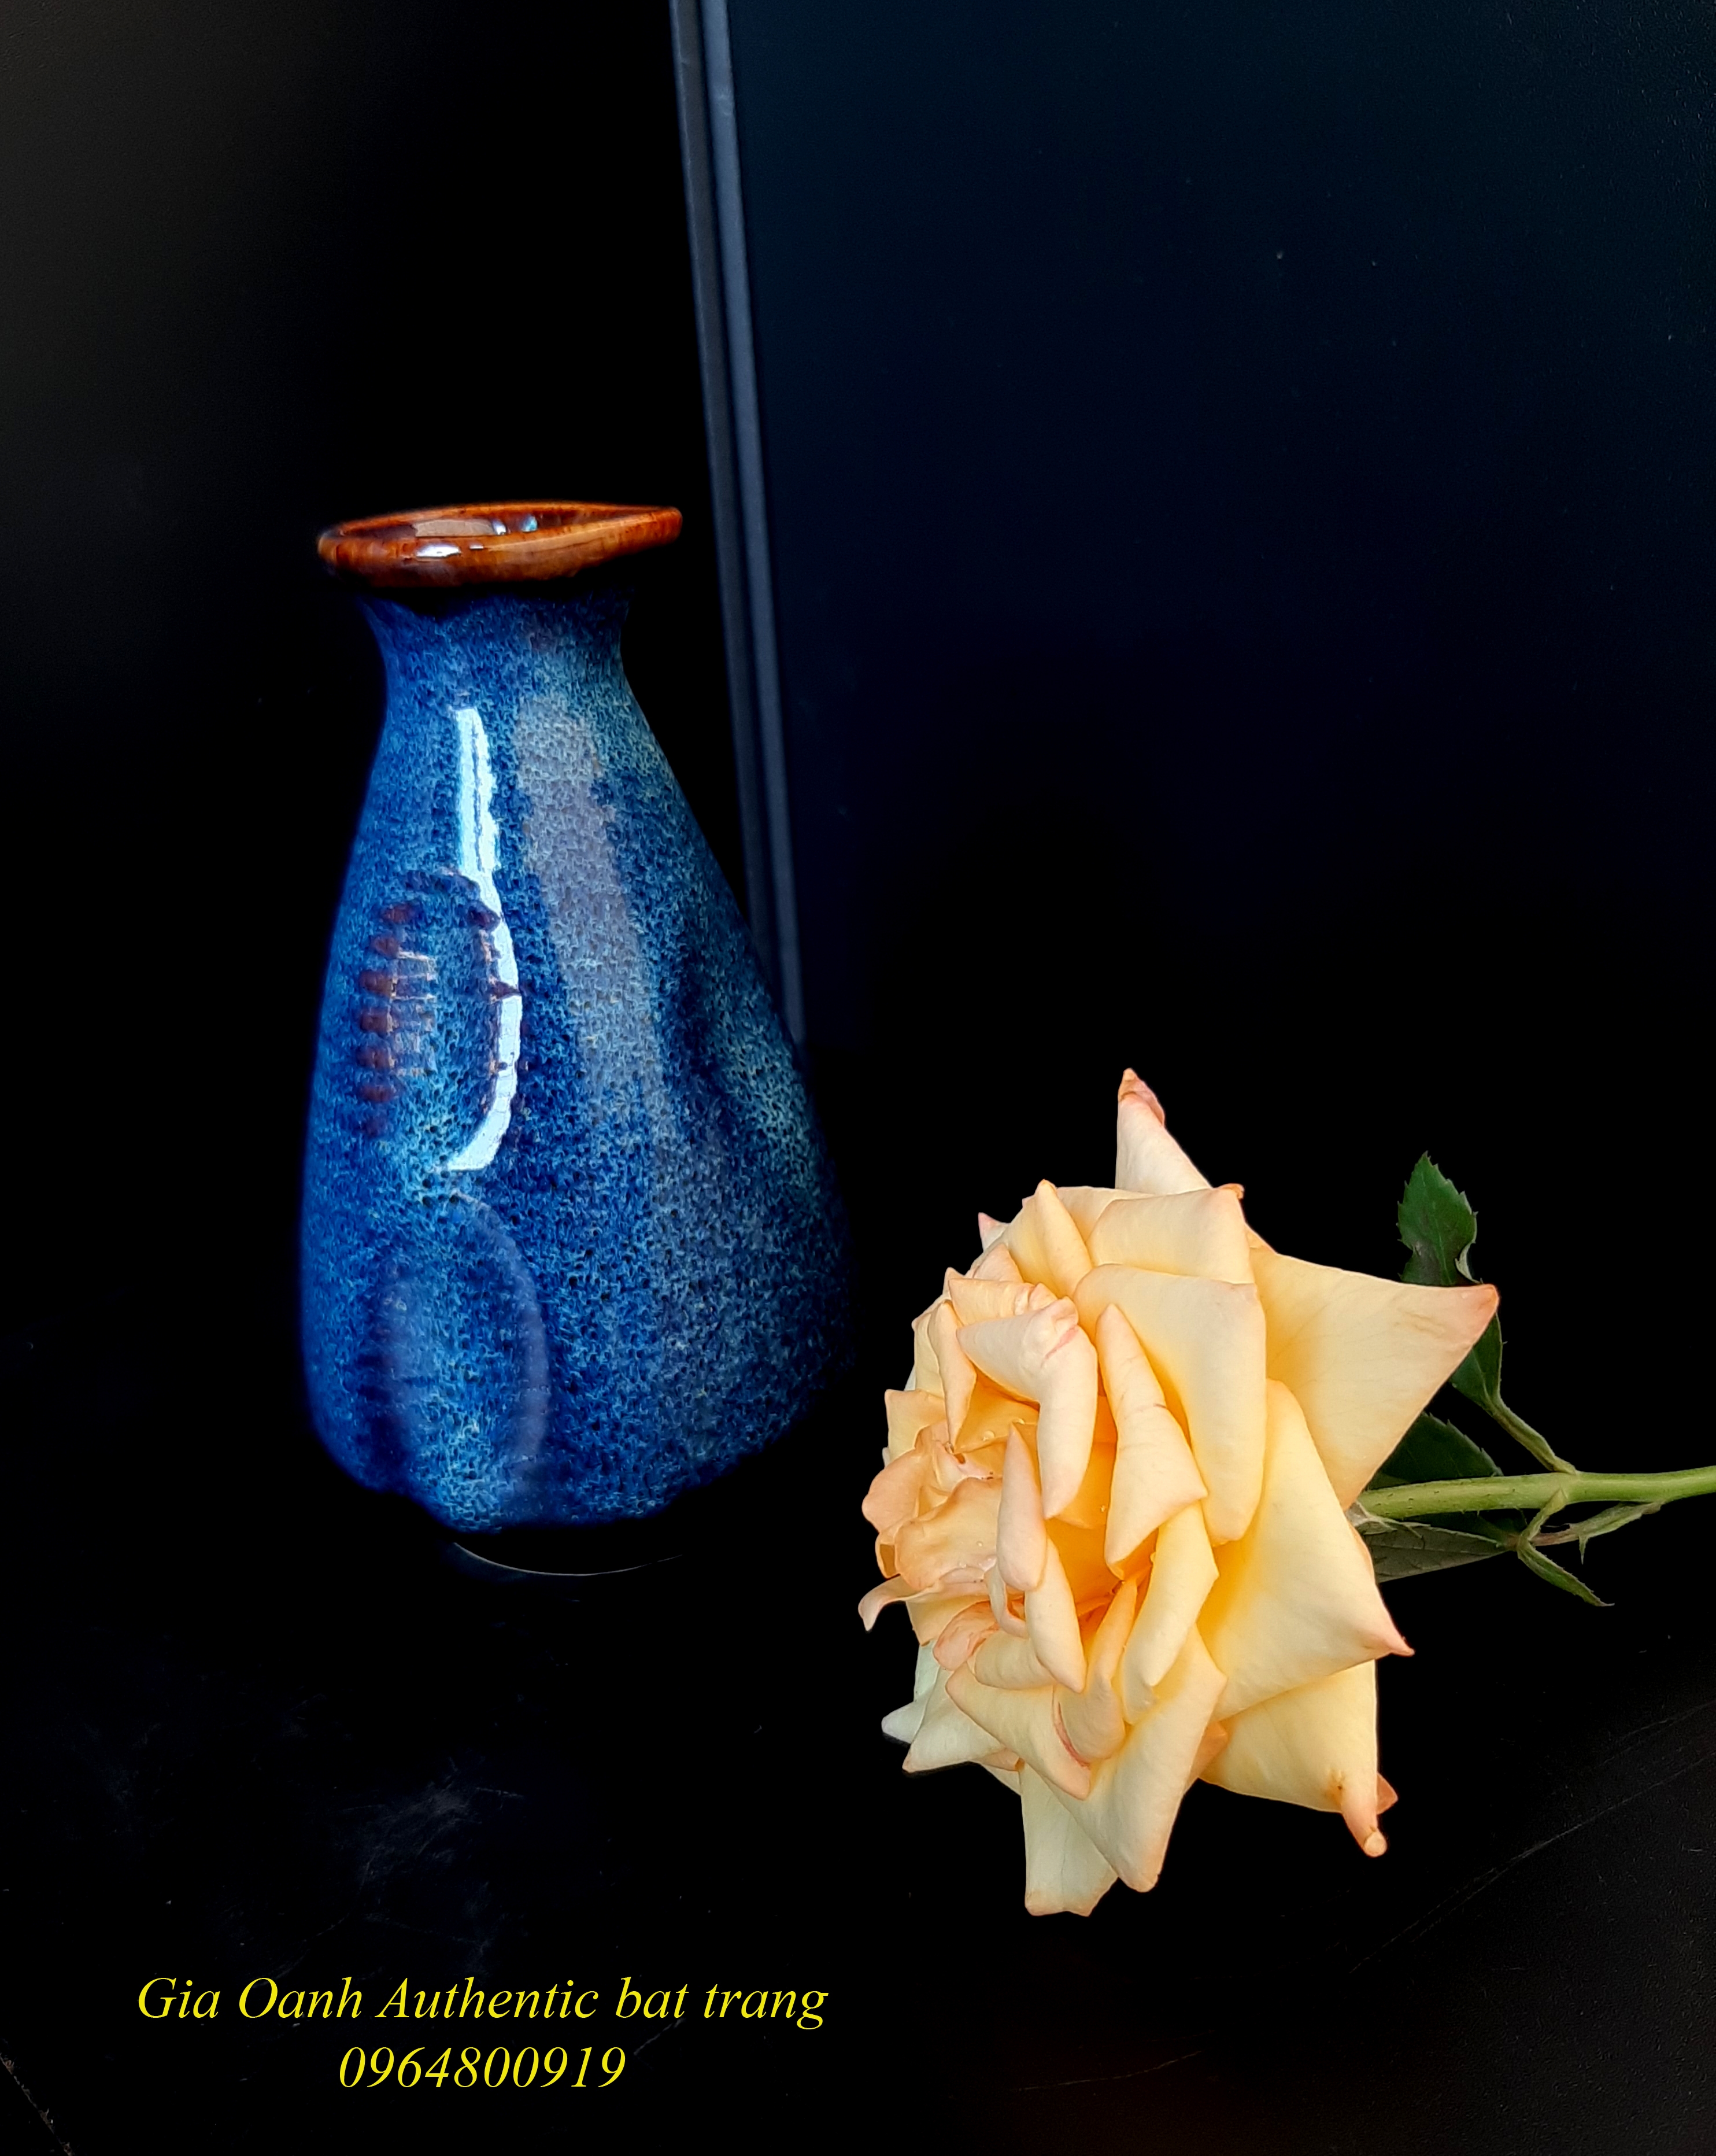 Blue Mini vase/ bình cắm hoa mini bóp miệng, men xanh hỏa biến sản xuất tại xưởng gốm sứ gia oanh authentic bat trang